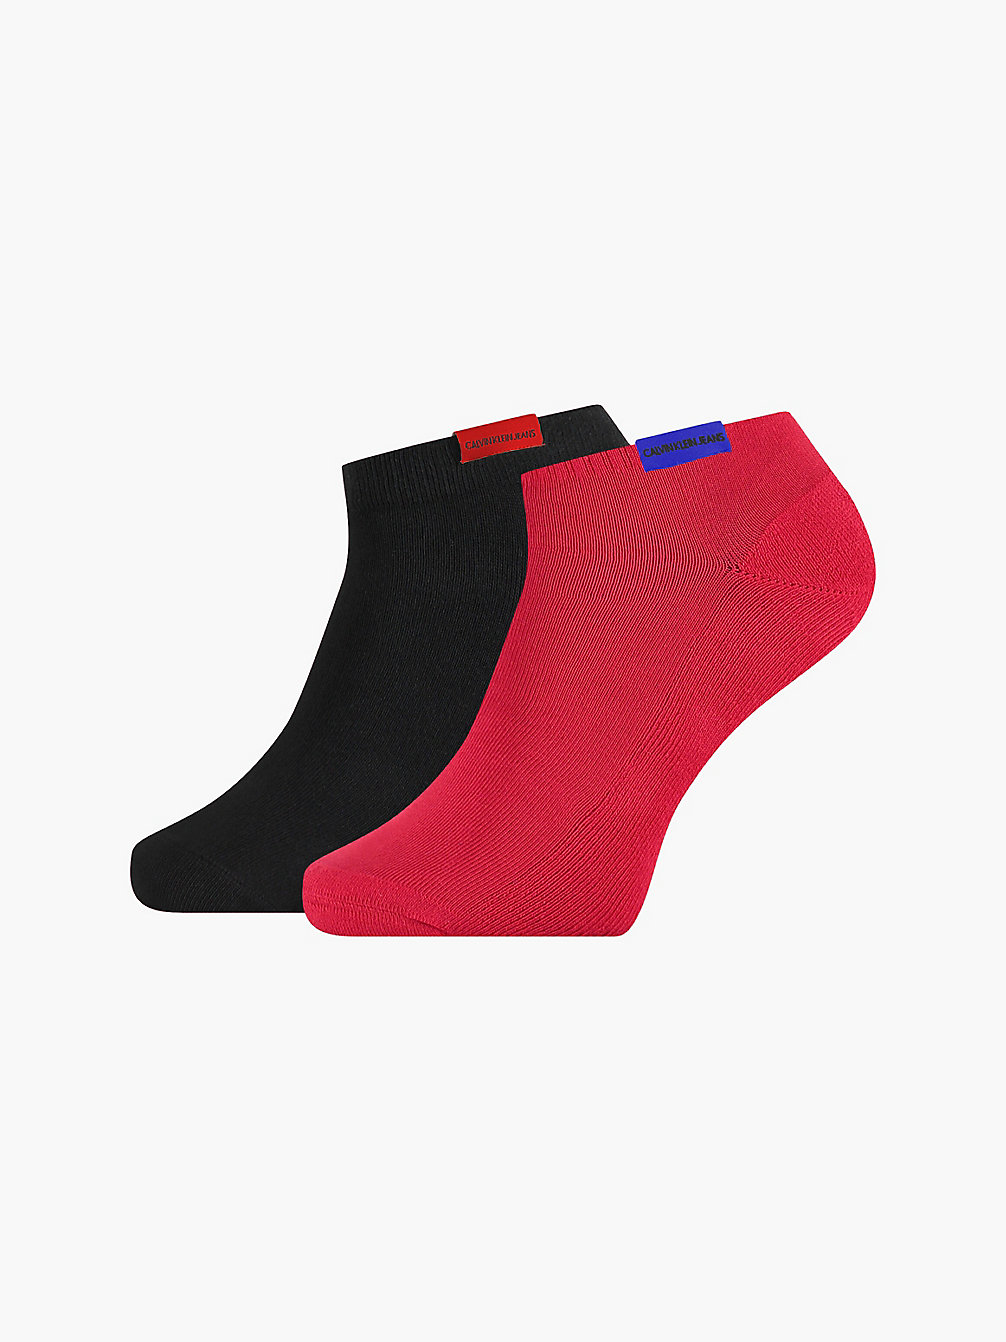 RED COMBO Lot De 2 Paires De Chaussettes De Cheville Avec Logo undefined hommes Calvin Klein